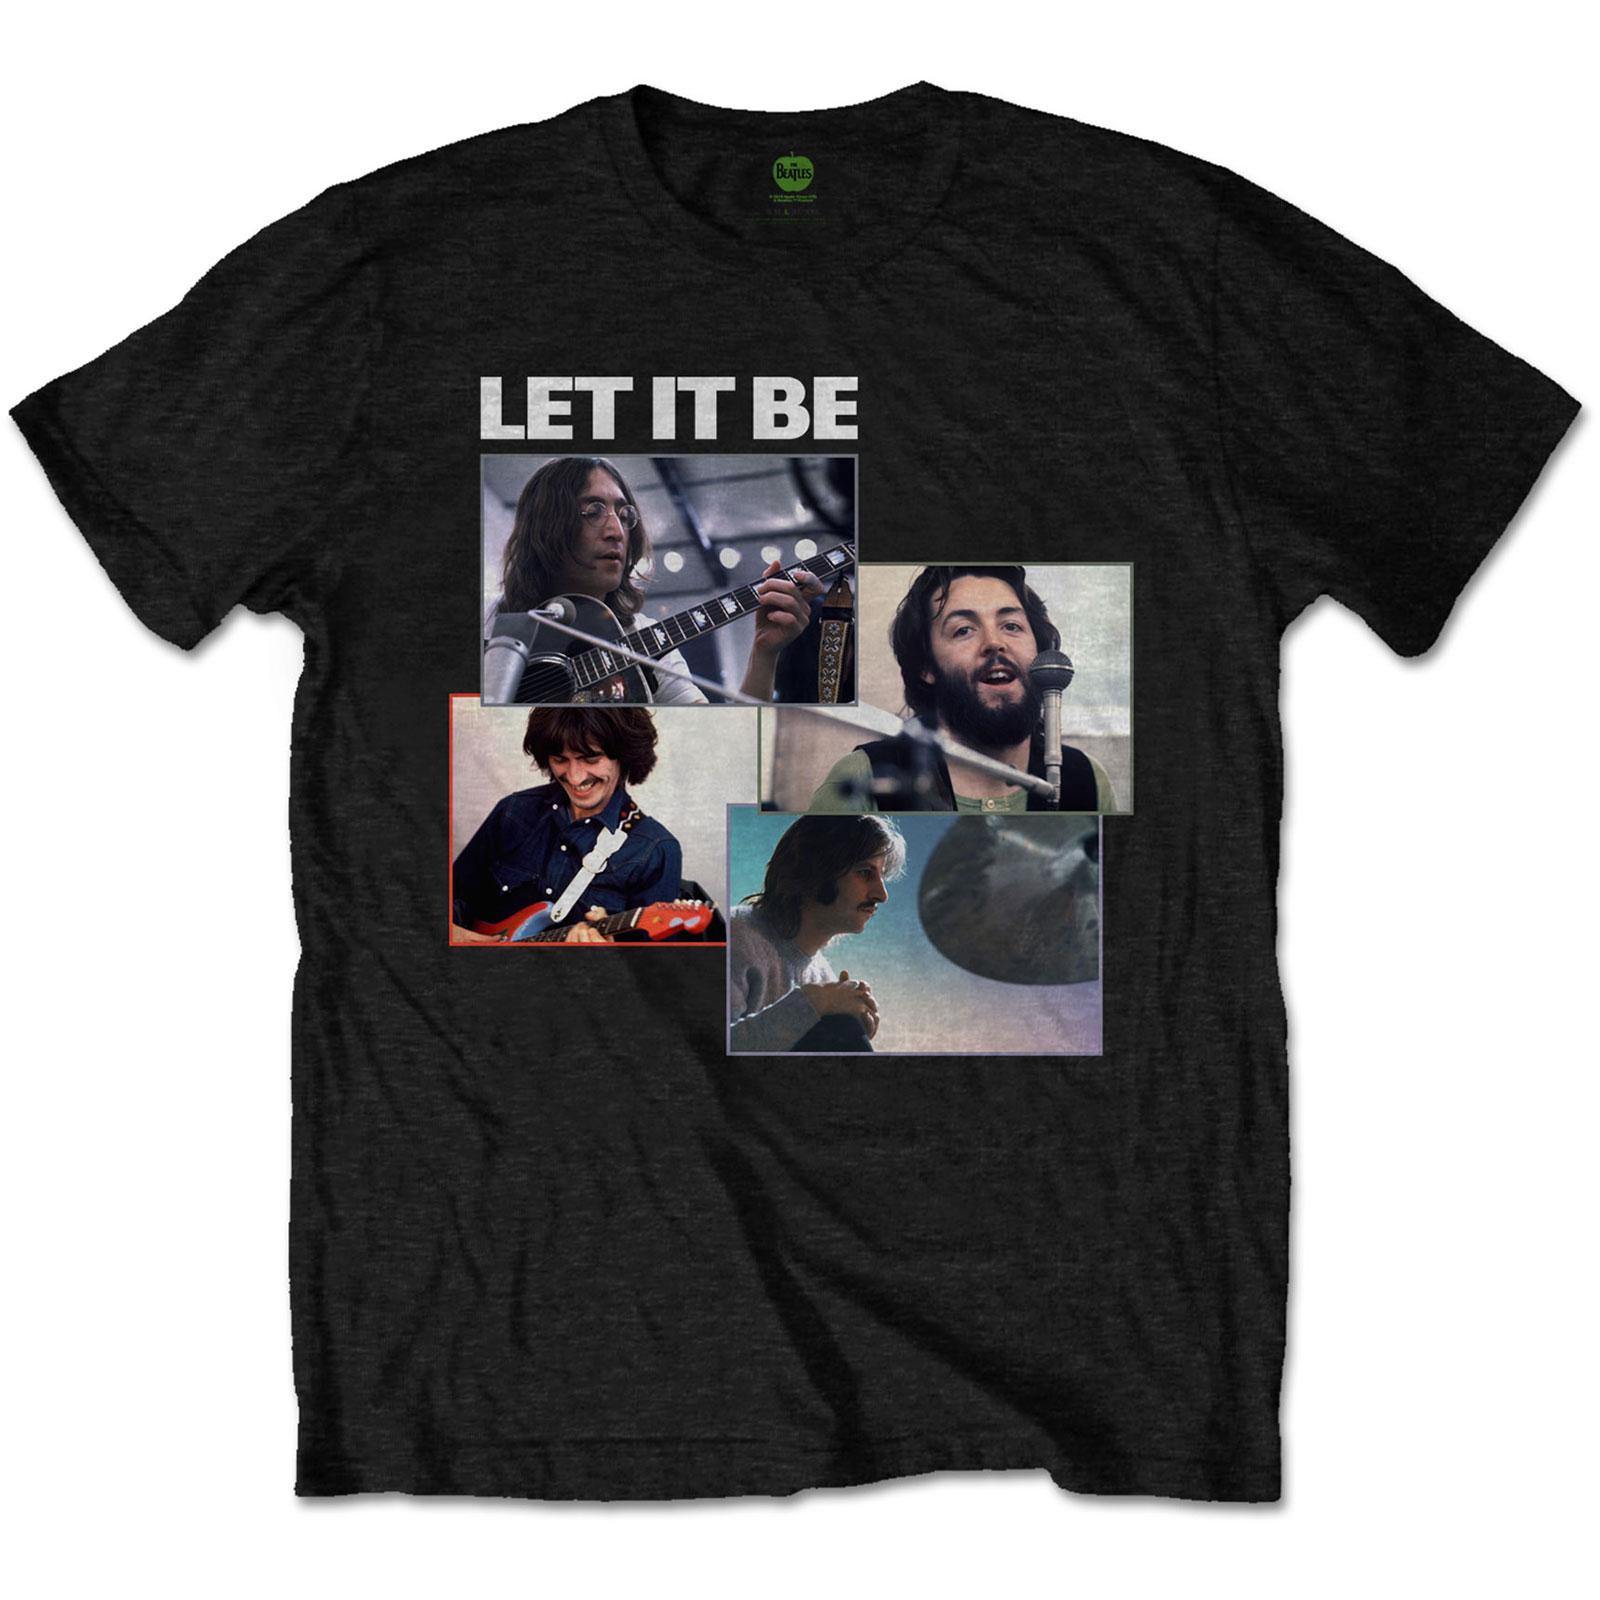 (ザ・ビートルズ) The Beatles オフィシャル商品 ユニセックス Let It Be Tシャツ レコーディングショット 半袖 トップス 【海外通販】